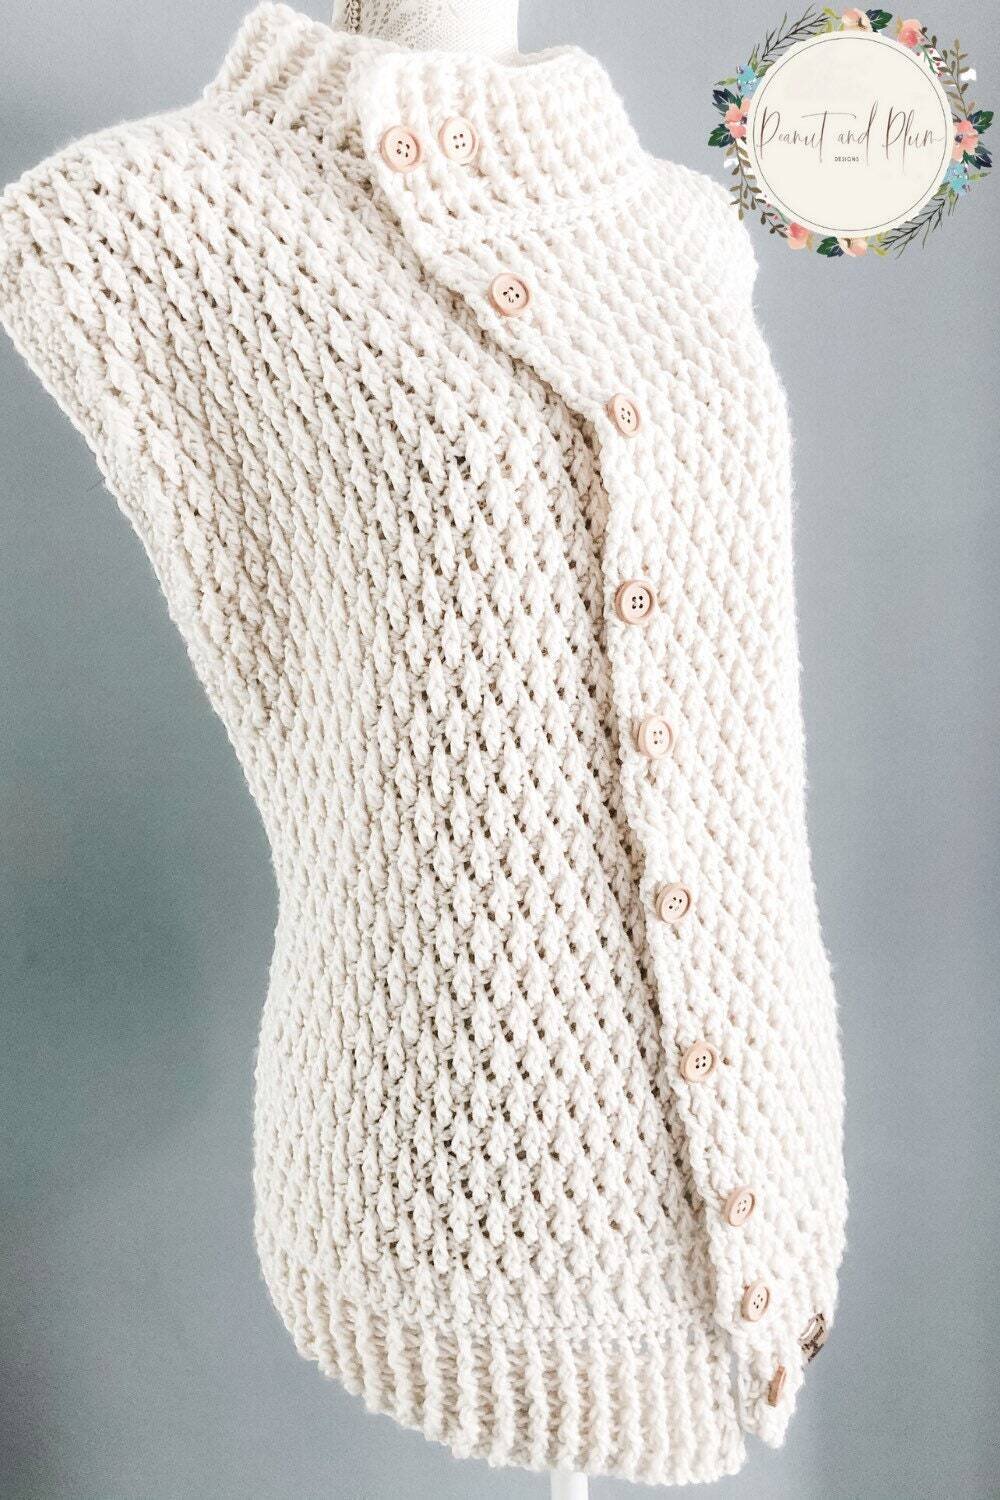 Crochet pattern, crochet gilet, crochet sweater